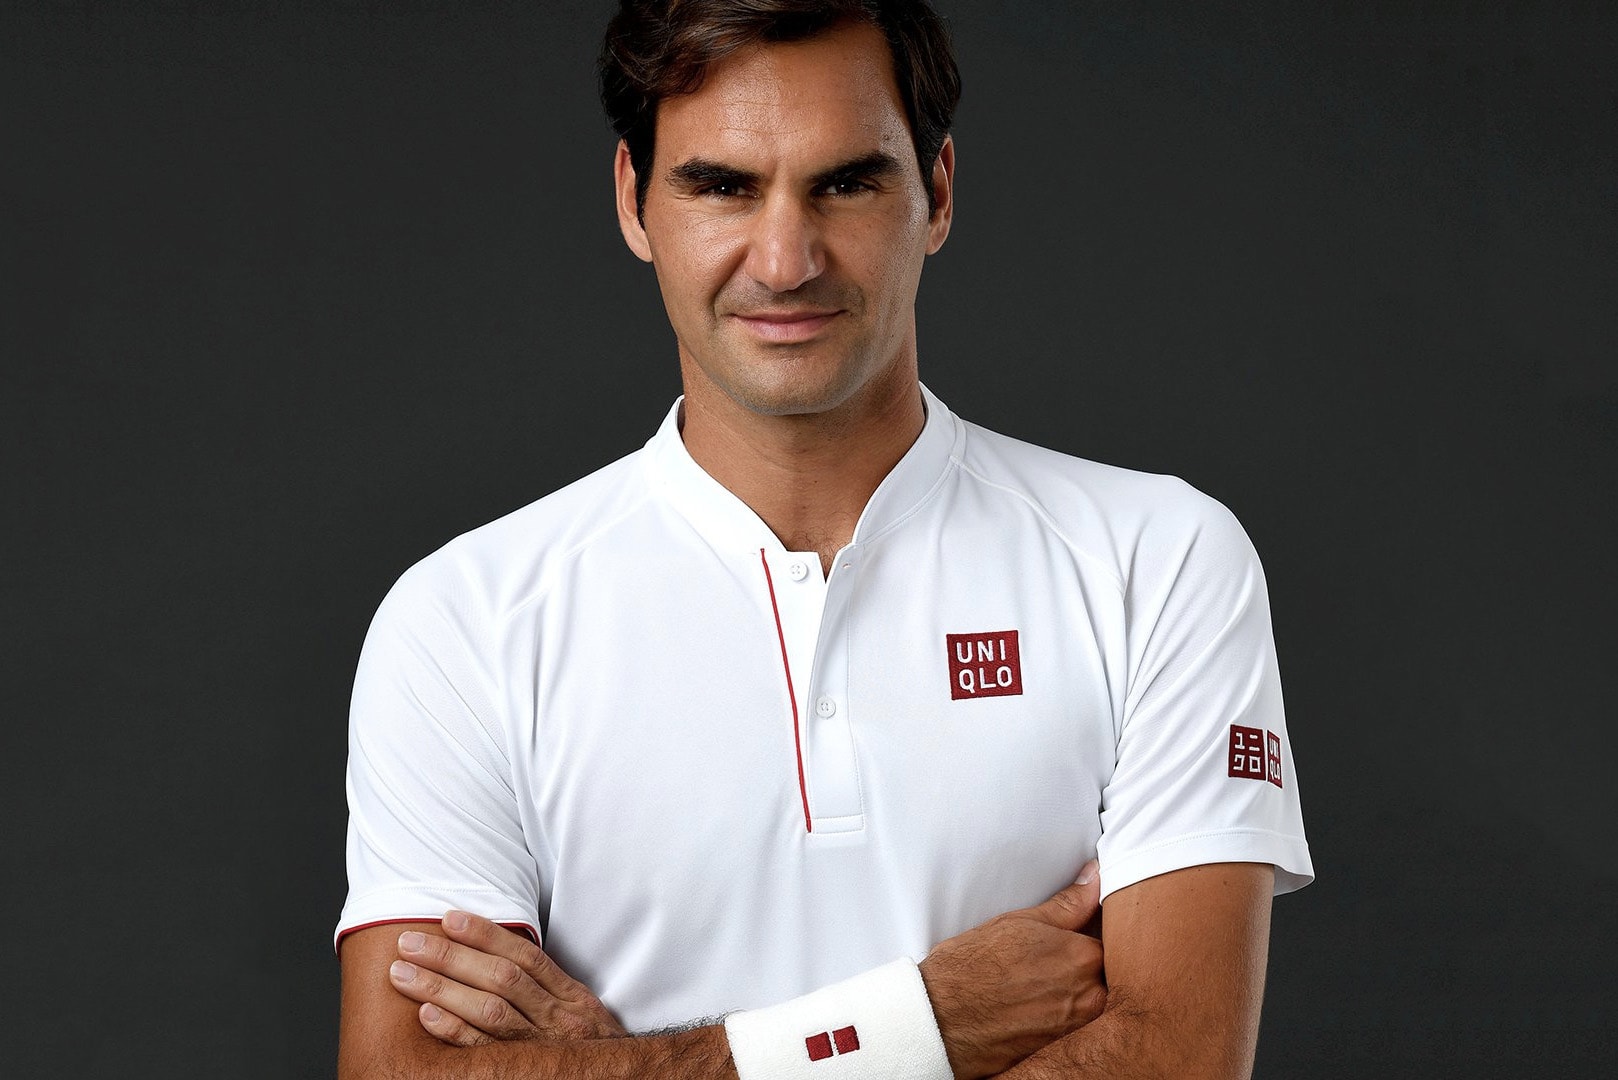 Roger Federer Now UNIQLO Global Brand Ambassador